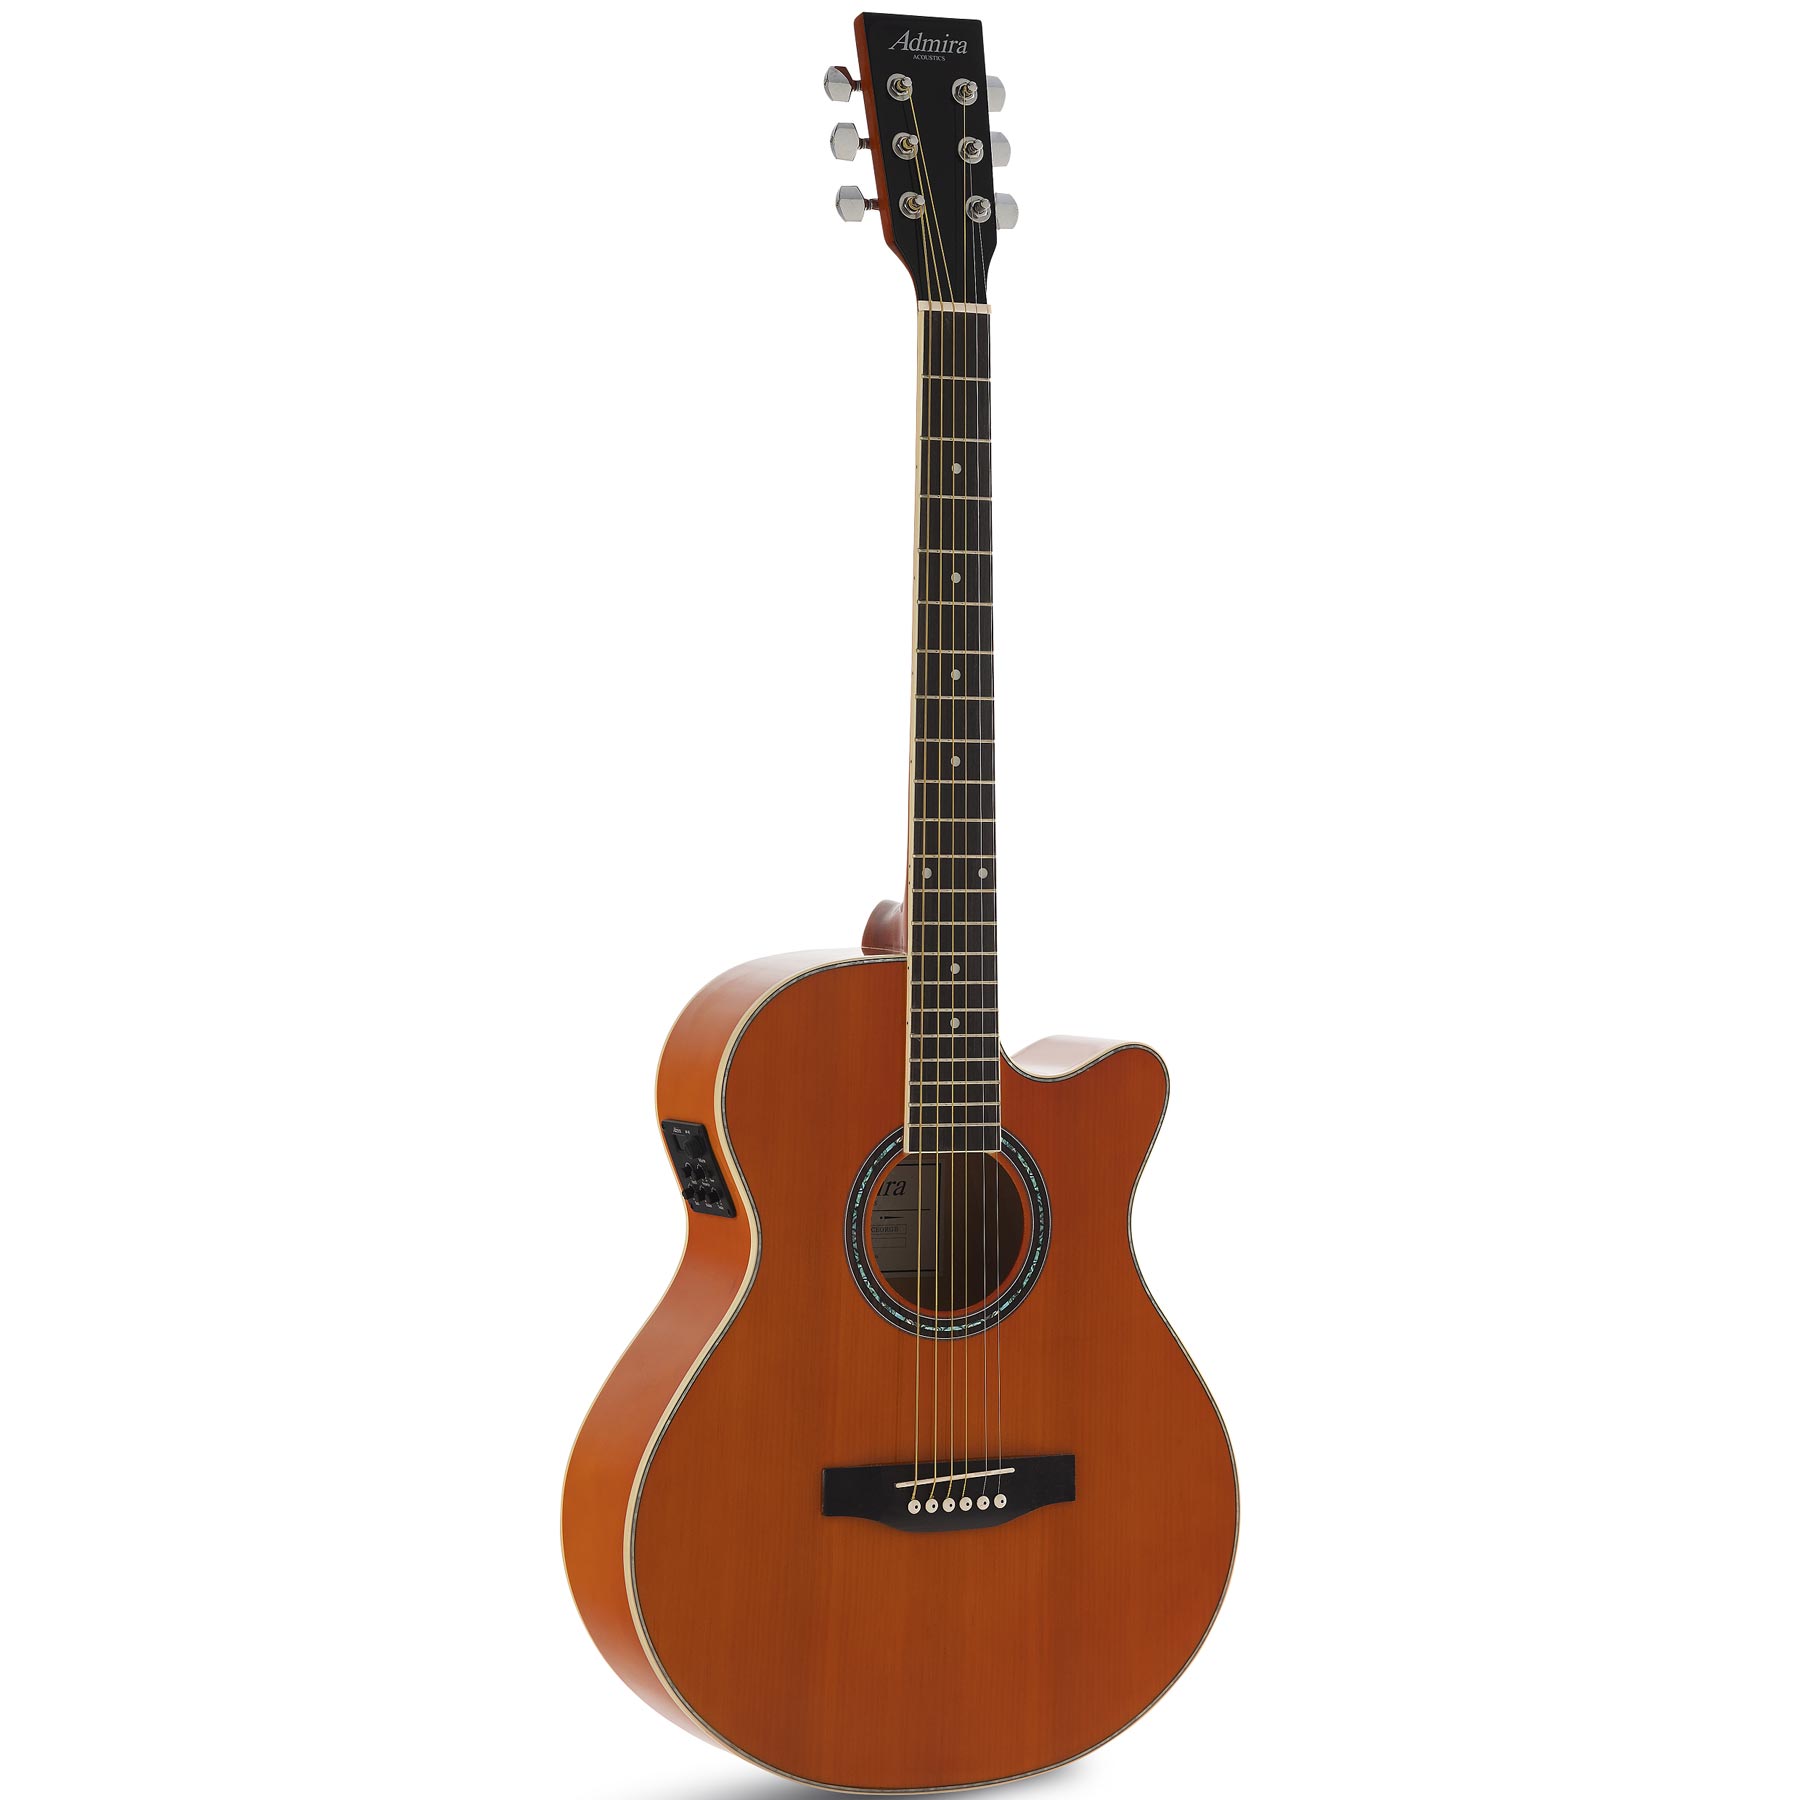 Compra las nuevas guitarras acusticas admira al mejor precio en Prieto Msica